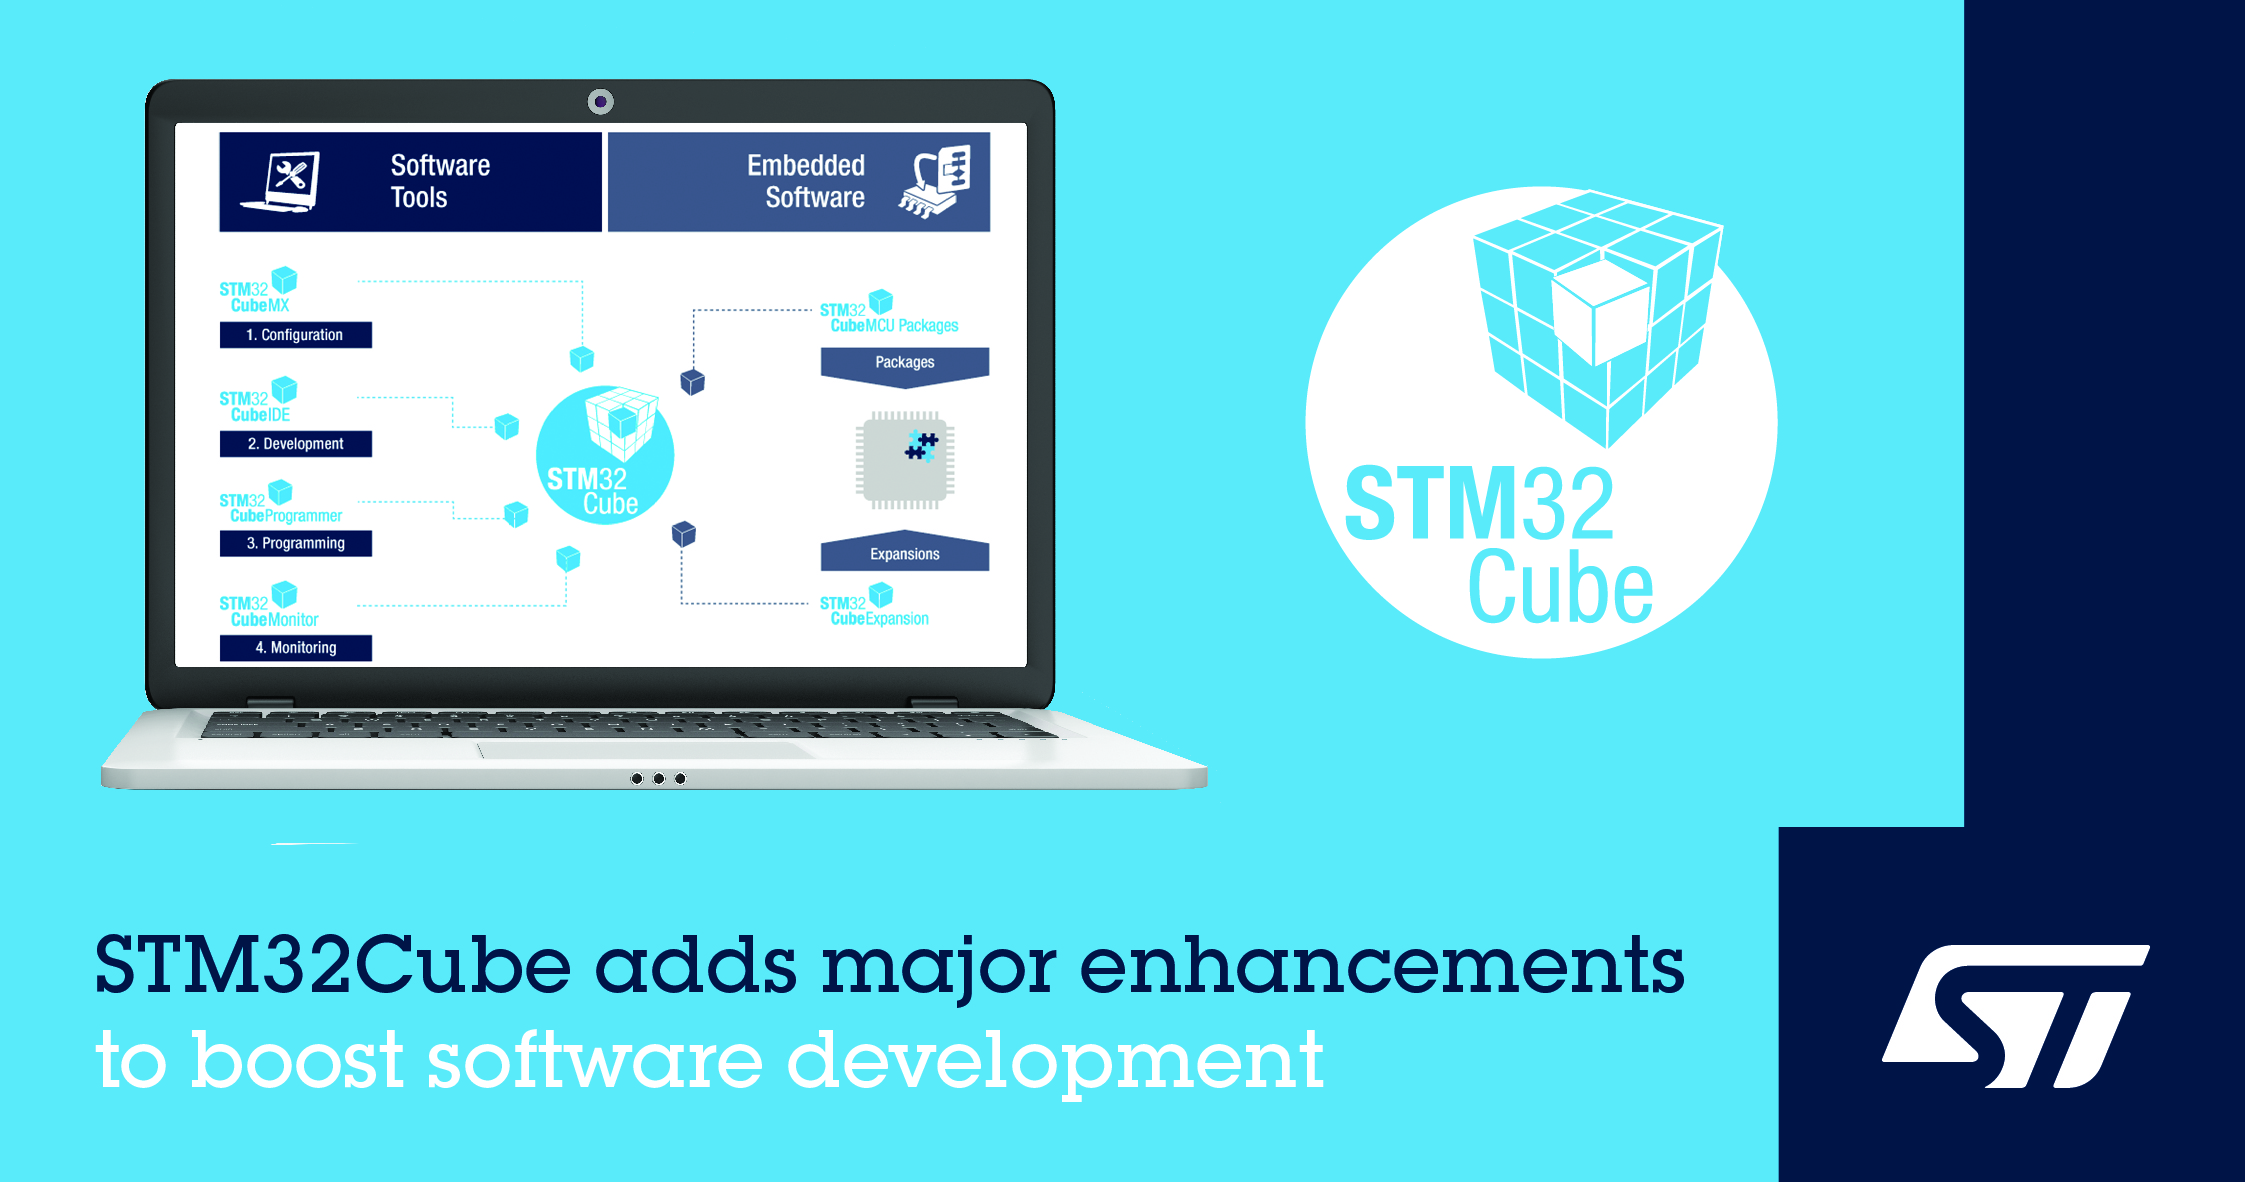 意法半导体为STM32Cube生态系统增添新功能，提高软件开发效率